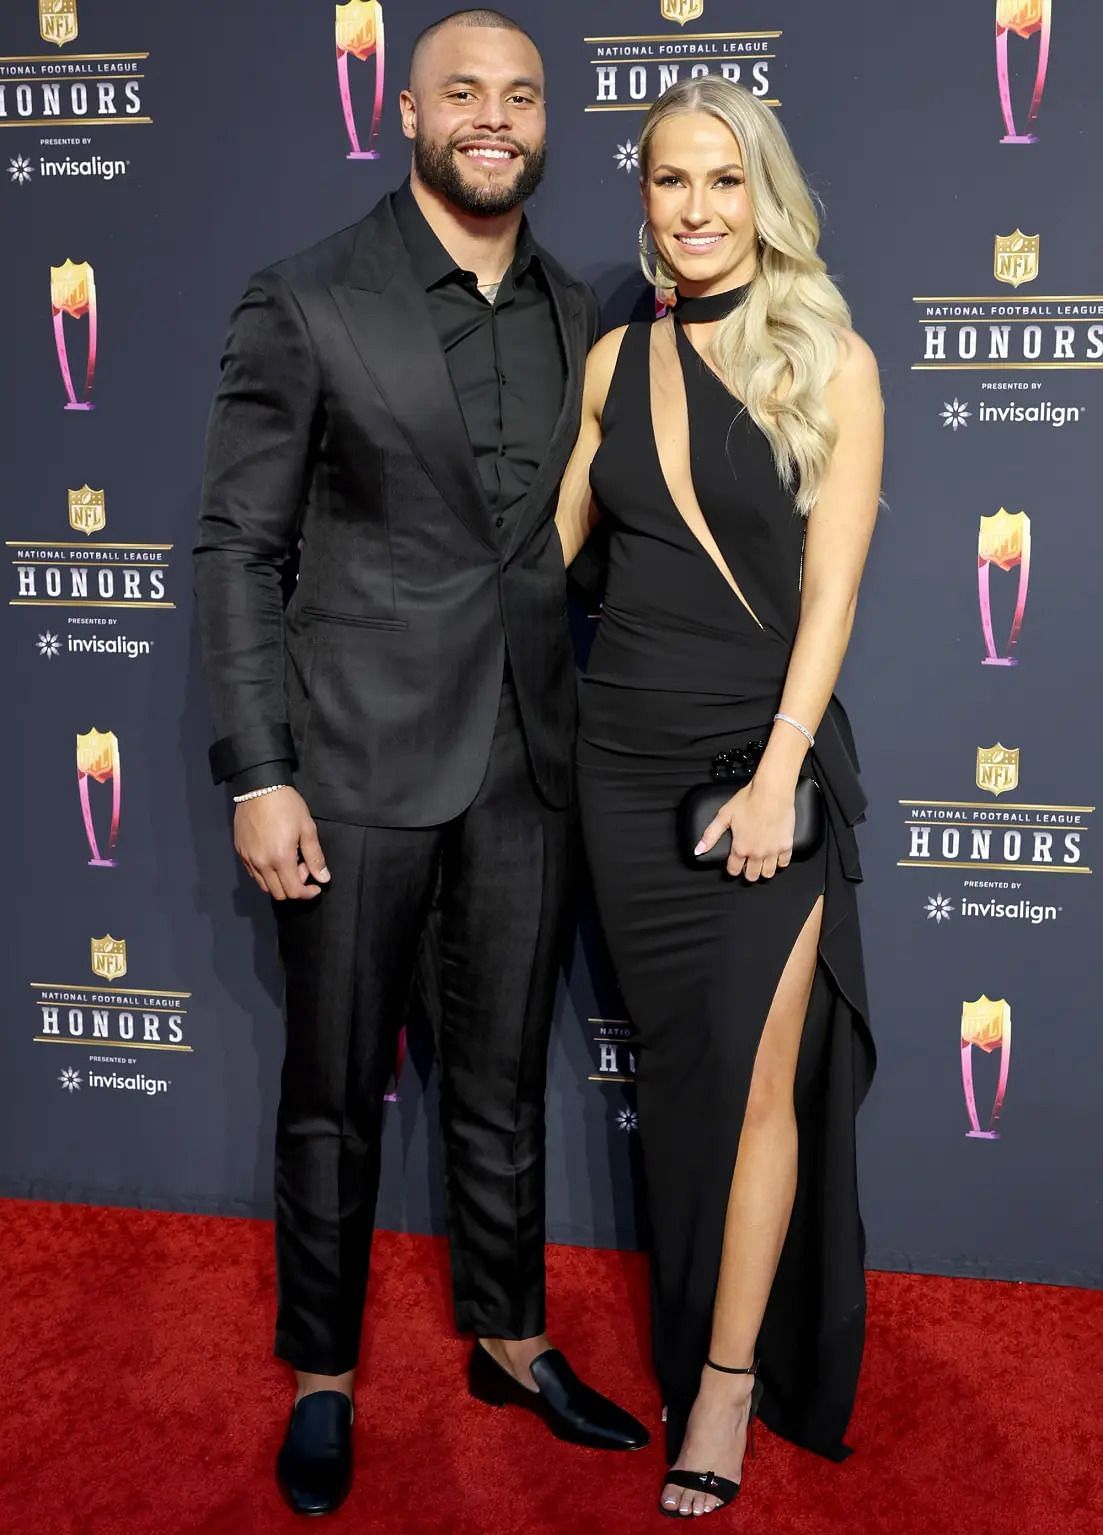 Dak Prescott (left) with his girlfriend Natalie Buffett at an NFL award ceremony